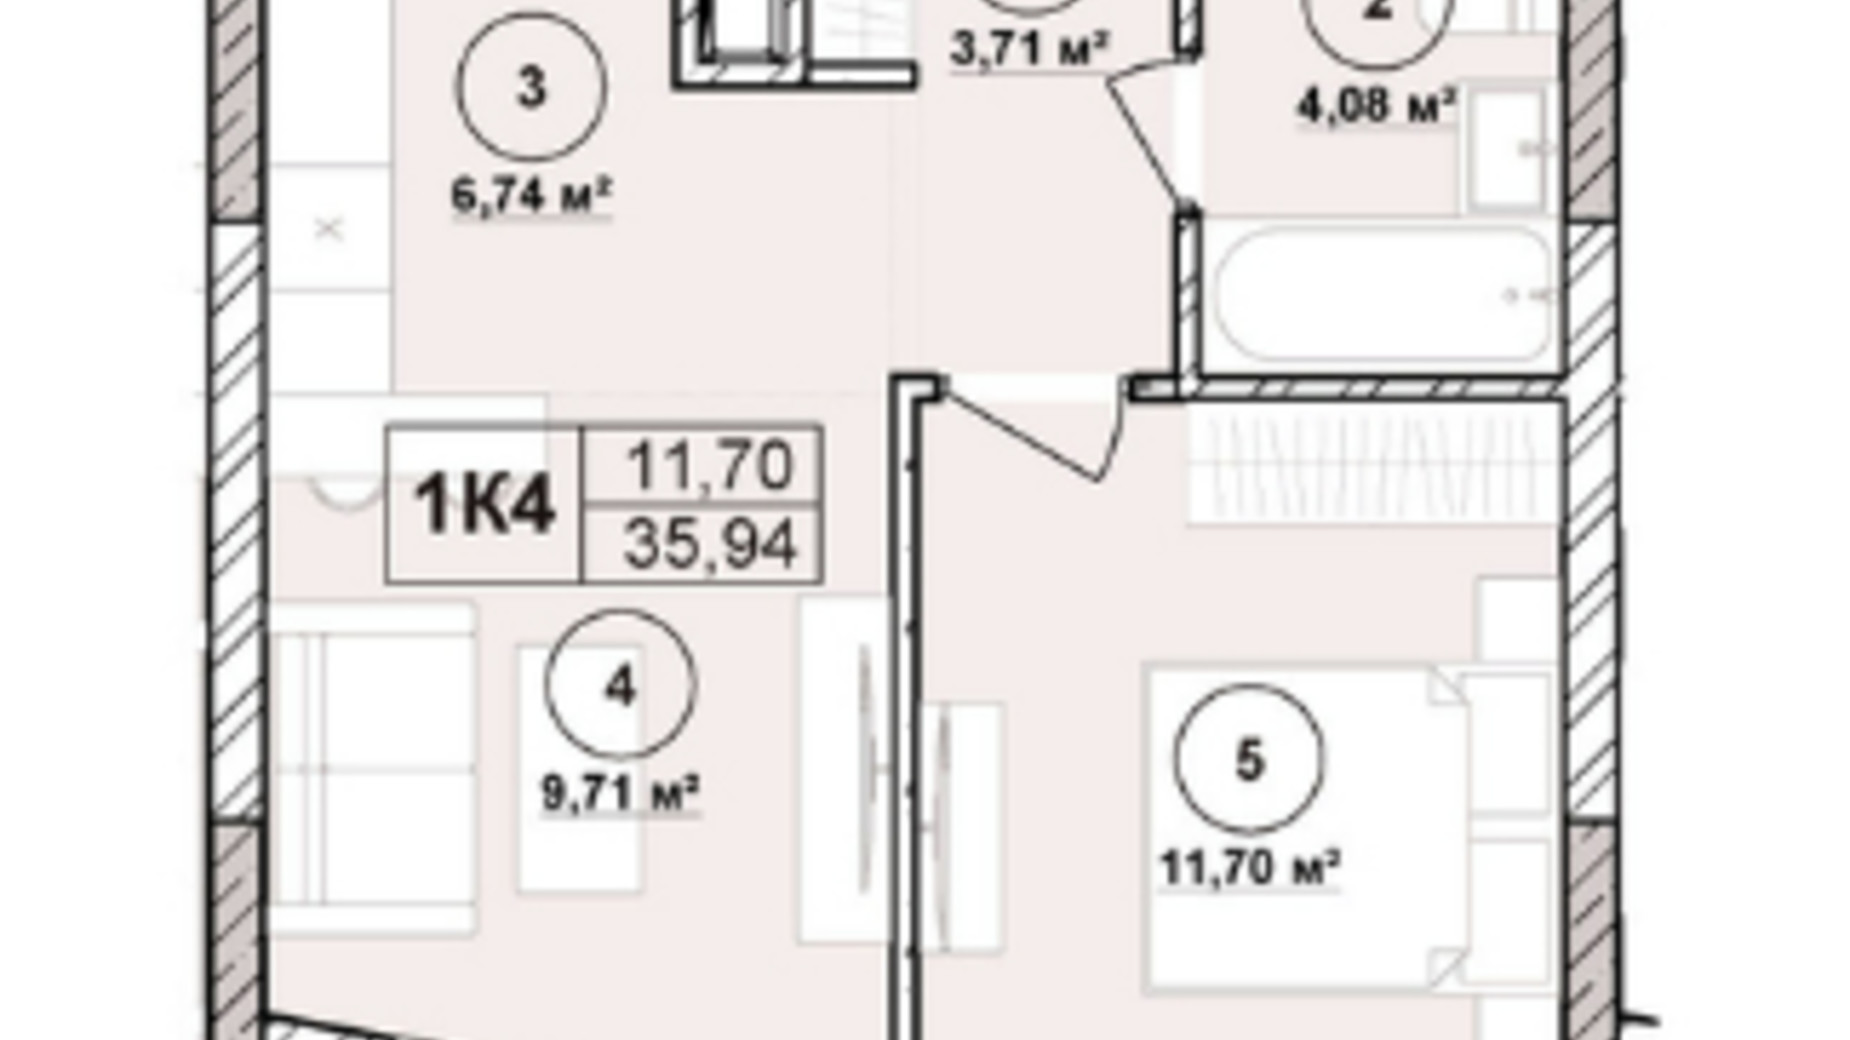 Планировка апартаментов в ЖК Milltown 35.94 м², фото 673241